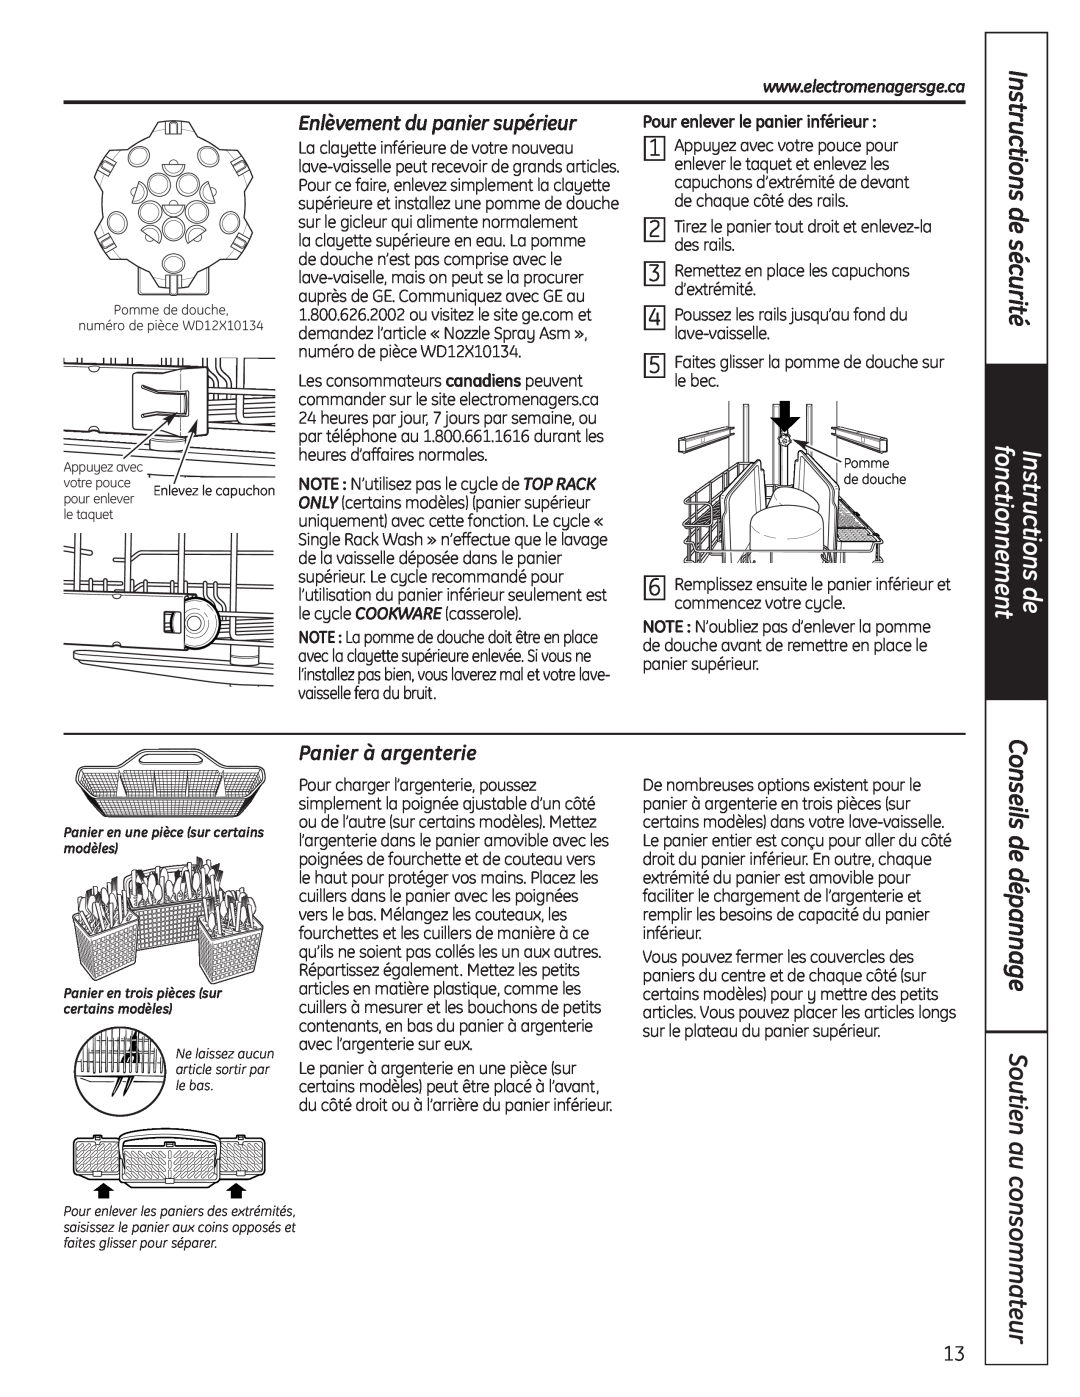 GE Stainless Steel Tub Dishwasher manual consommateur, Enlèvement du panier supérieur, Panier à argenterie, de sécurité 